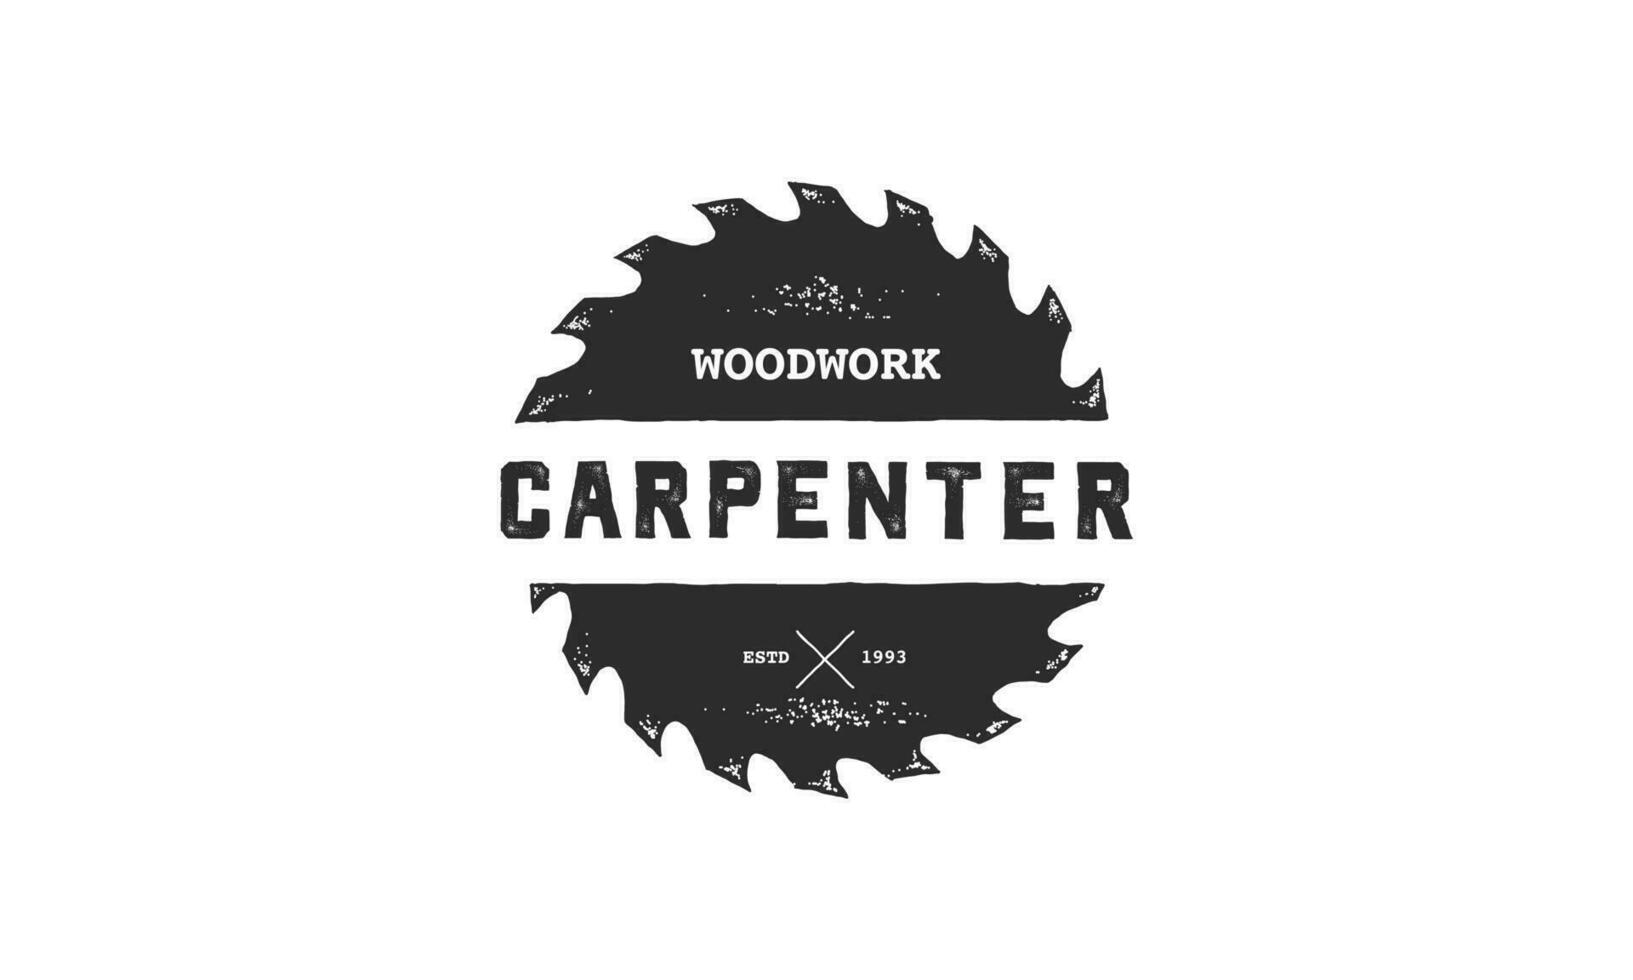 carpintero diseño elemento en Clásico estilo para logotipo, etiqueta, insignia, camisetas y otro diseño. carpintería retro vector ilustración.